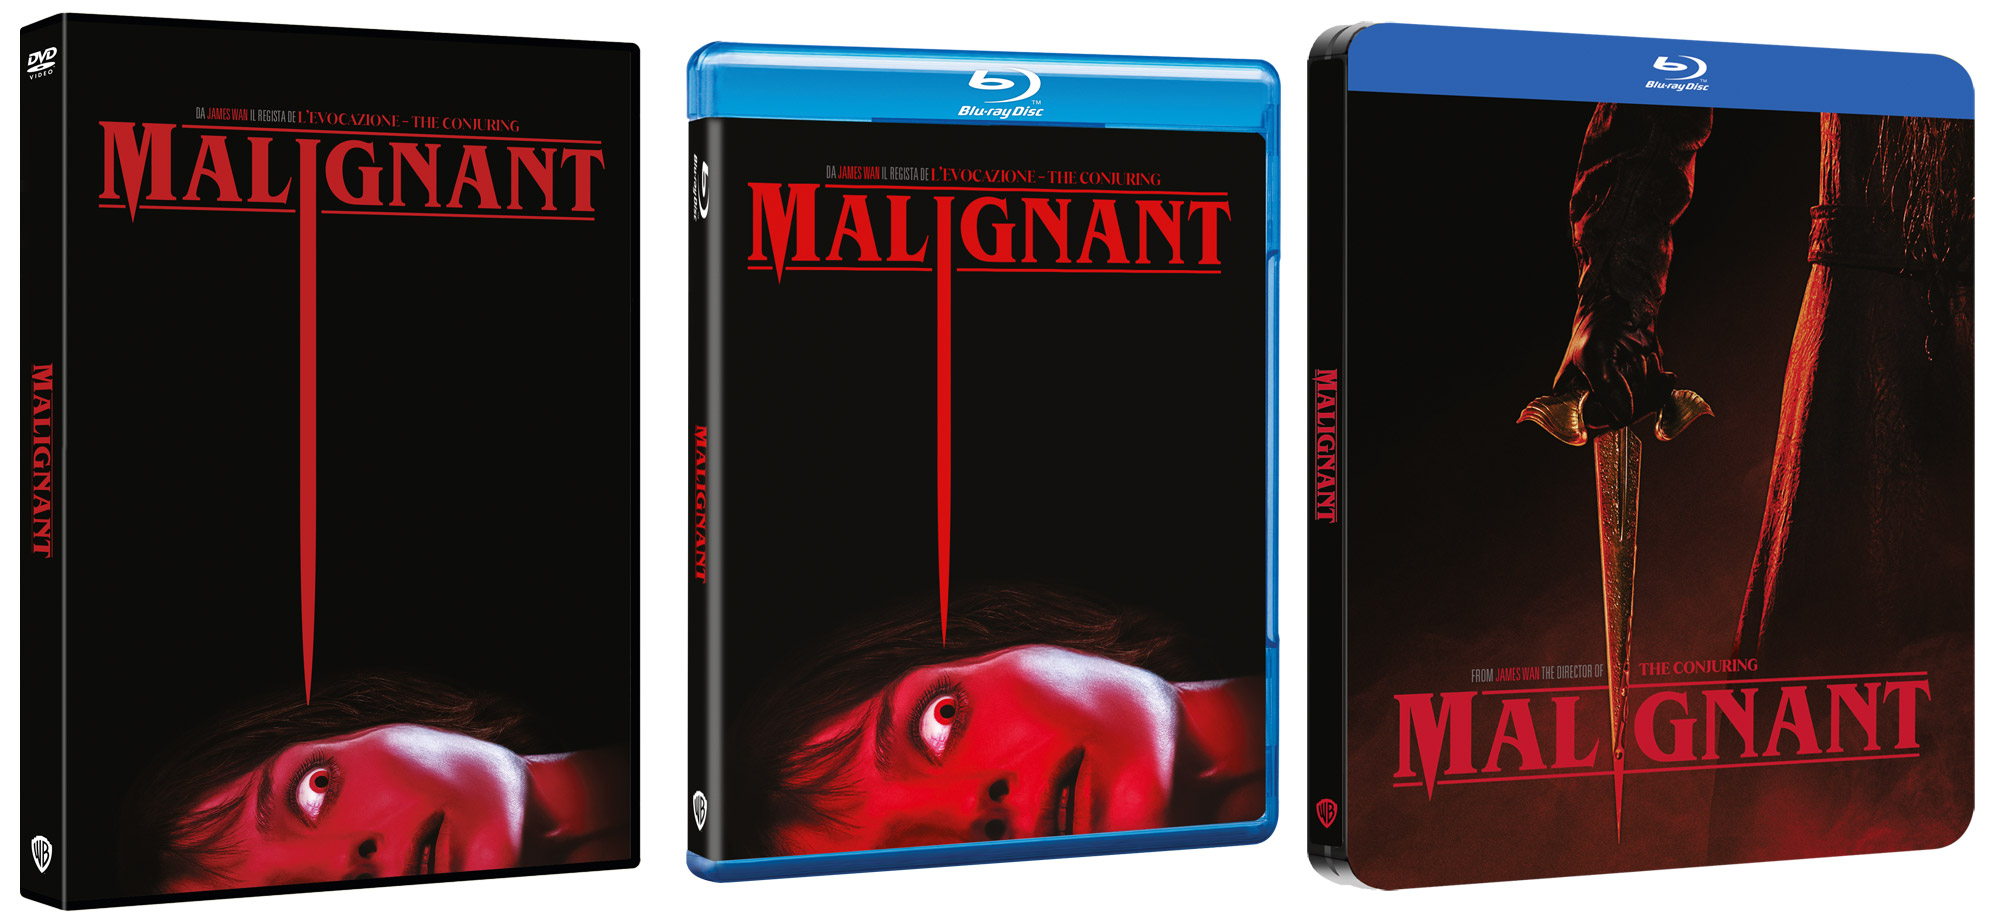 MALIGNANT in DVD, Blu-ray, 4K Ultra HD e Steelbook 4K Ultra HD